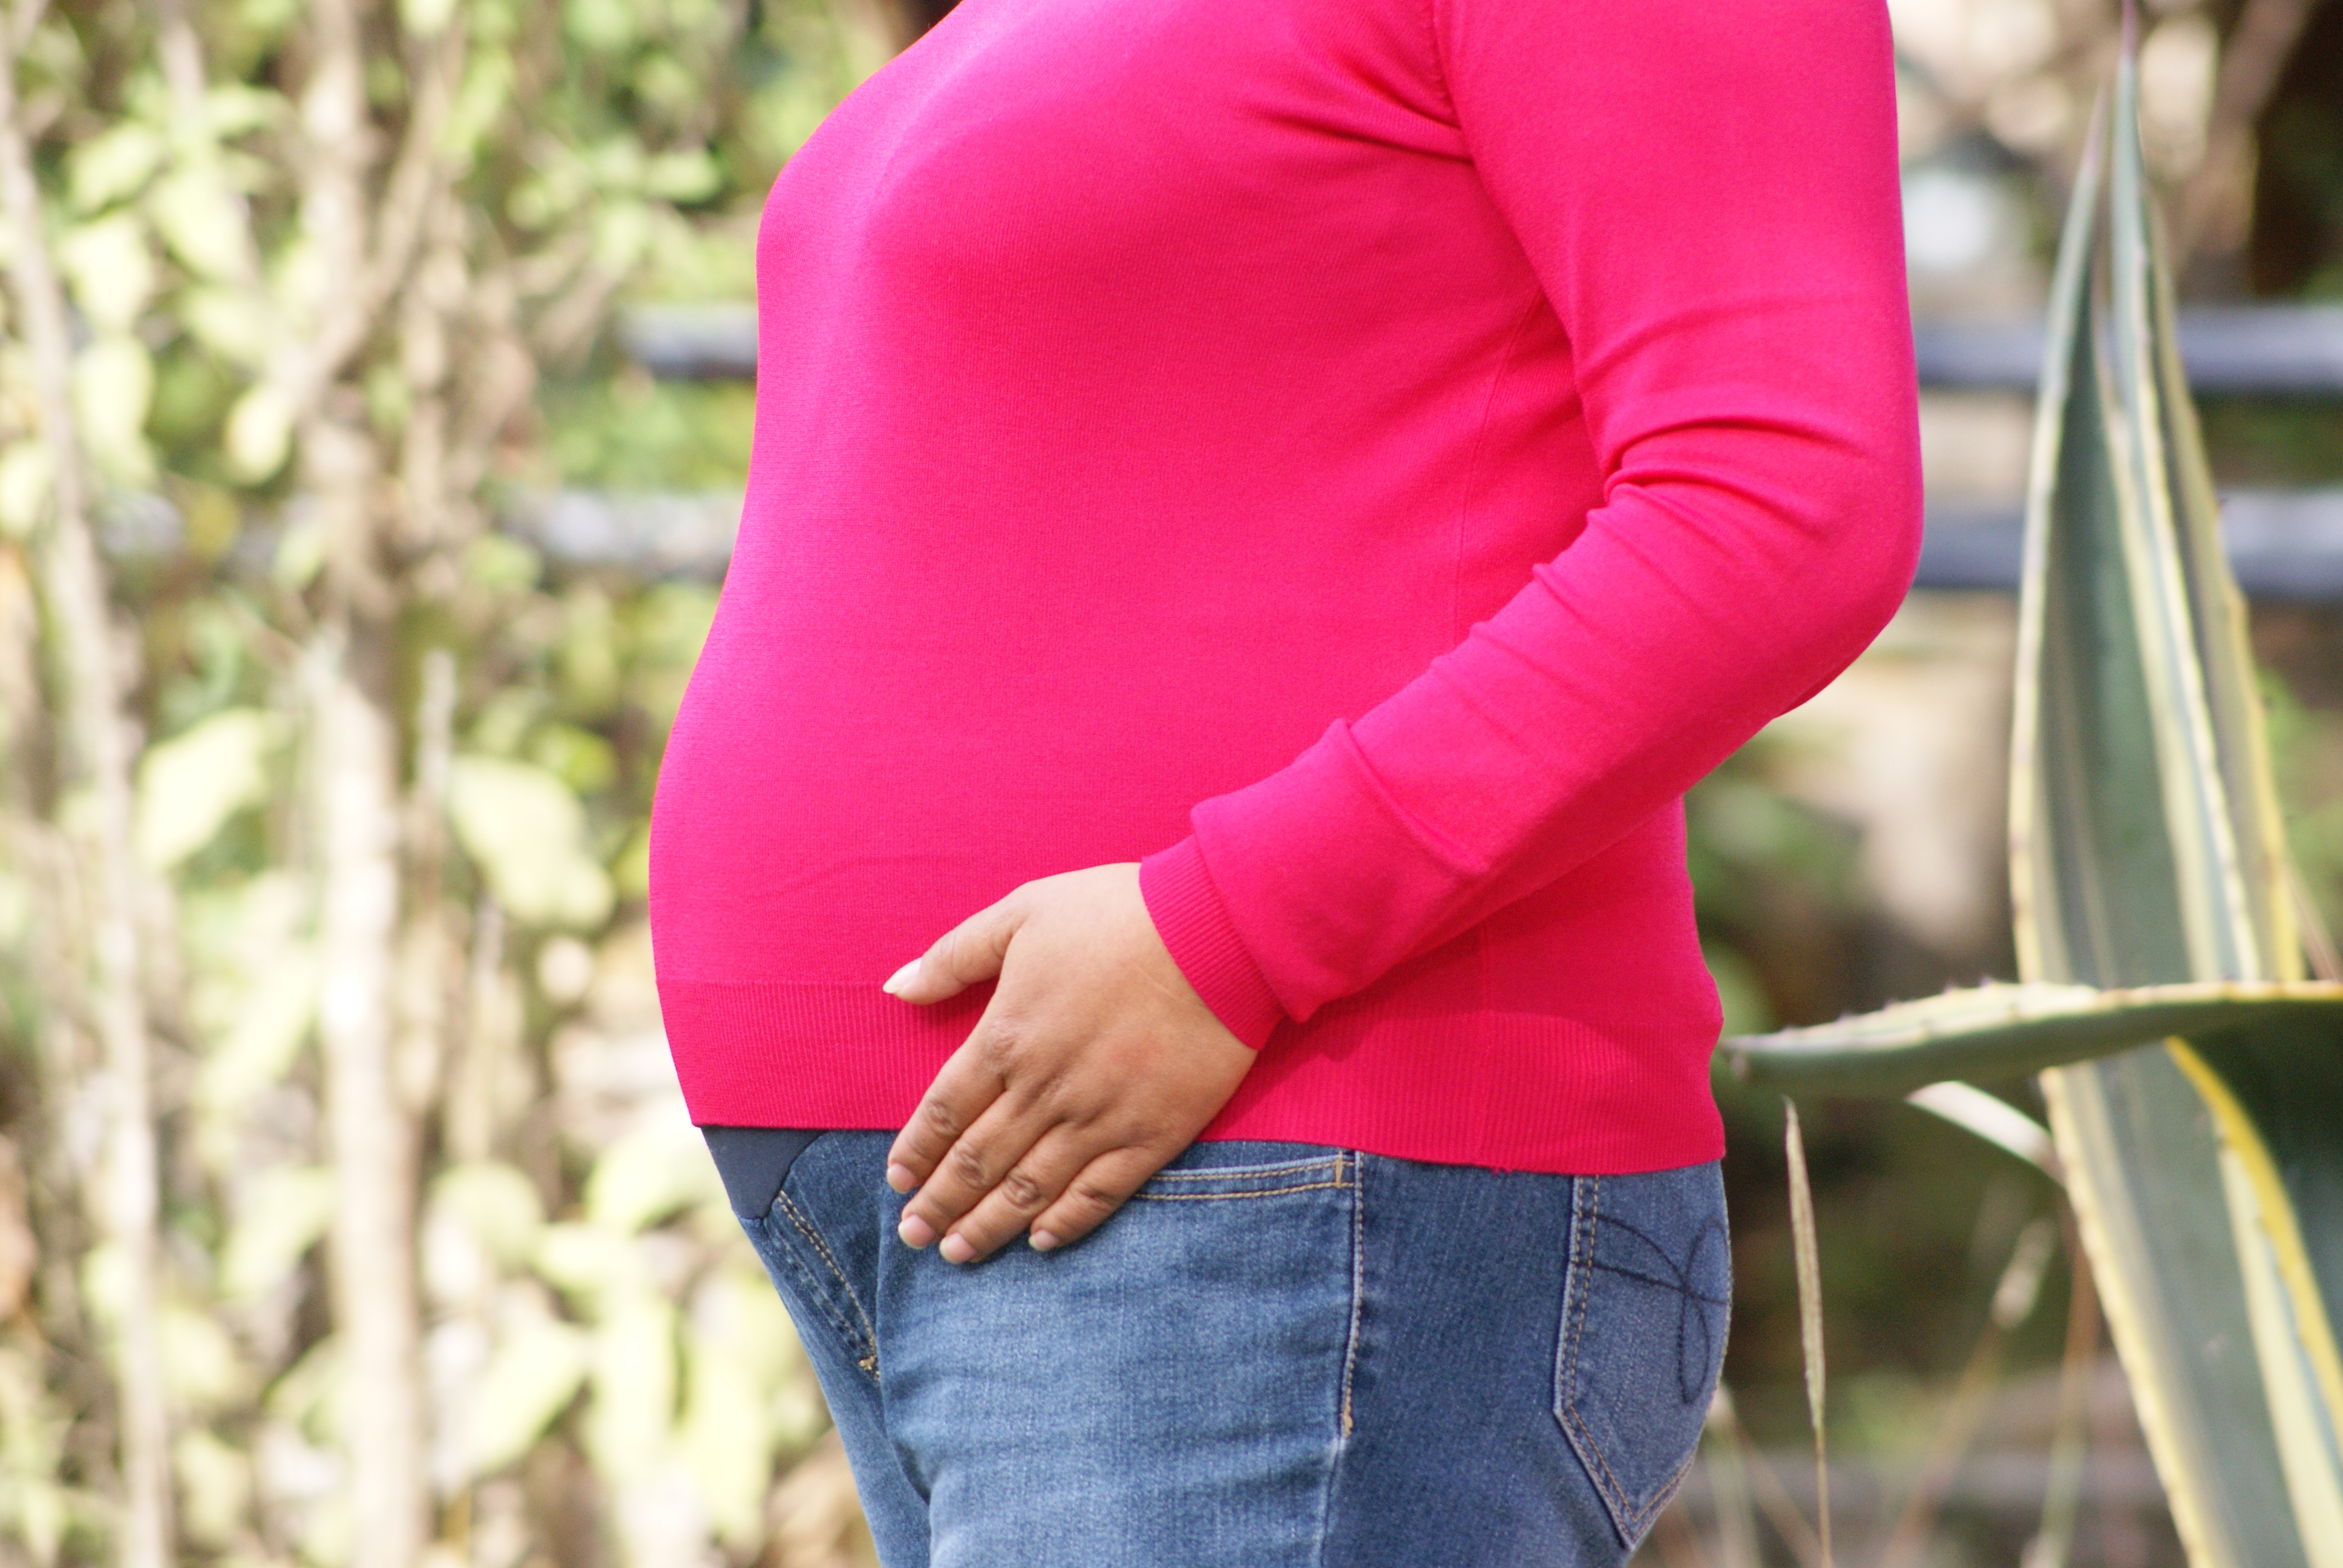 Mujeres embarazadas, atención segura de su salud y parto en tiempos del  COVID-19. Posibilidades en el contexto mexicano - Portal de El Colegio de  la Frontera Sur